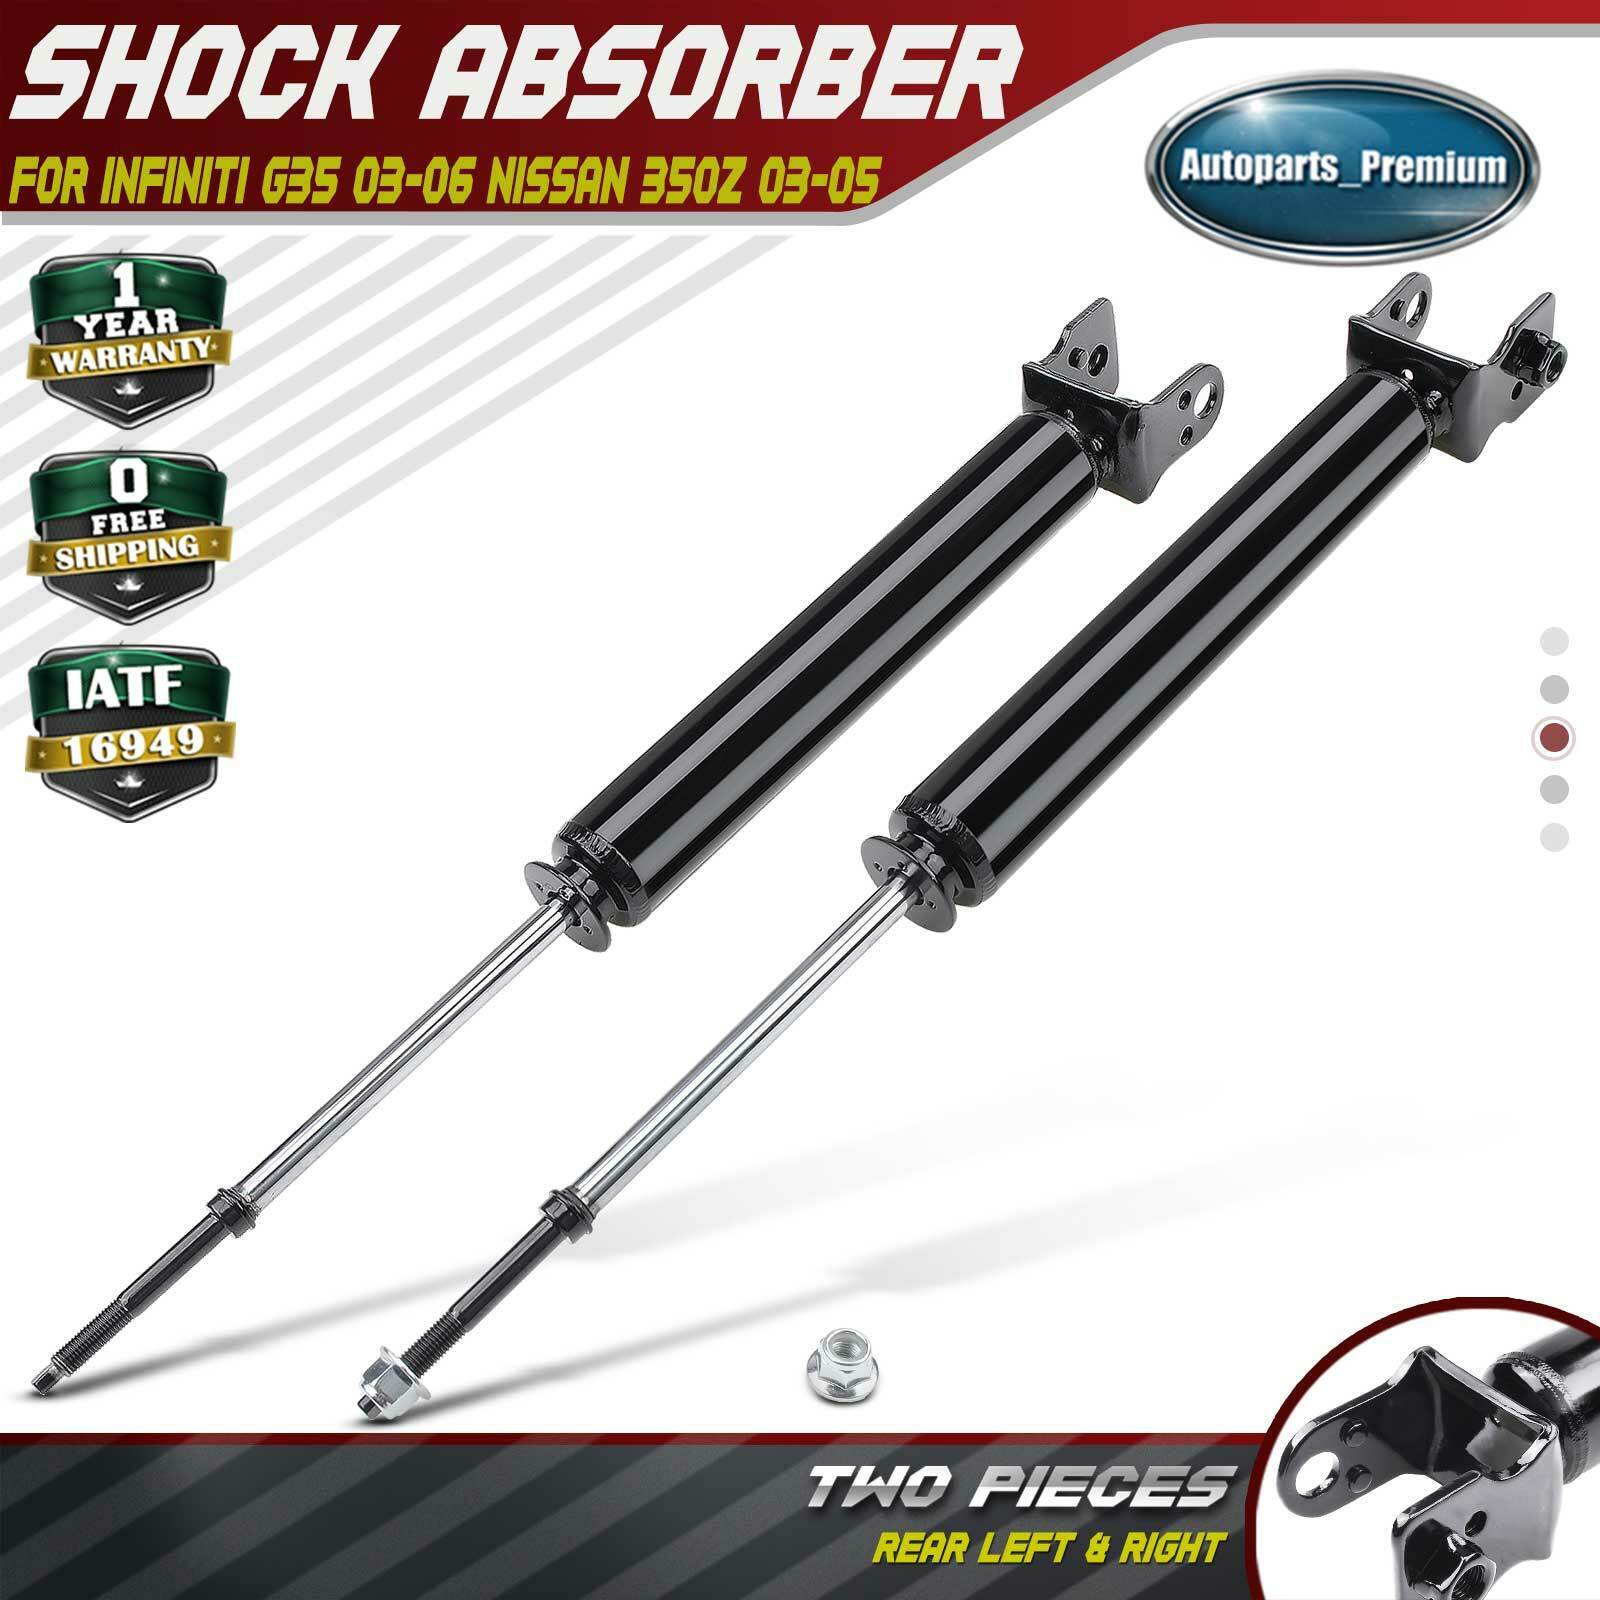 2x Shock Struts Absorber for Infiniti G35 03-06 Nissan 350Z 03-05 Rear LH & RH